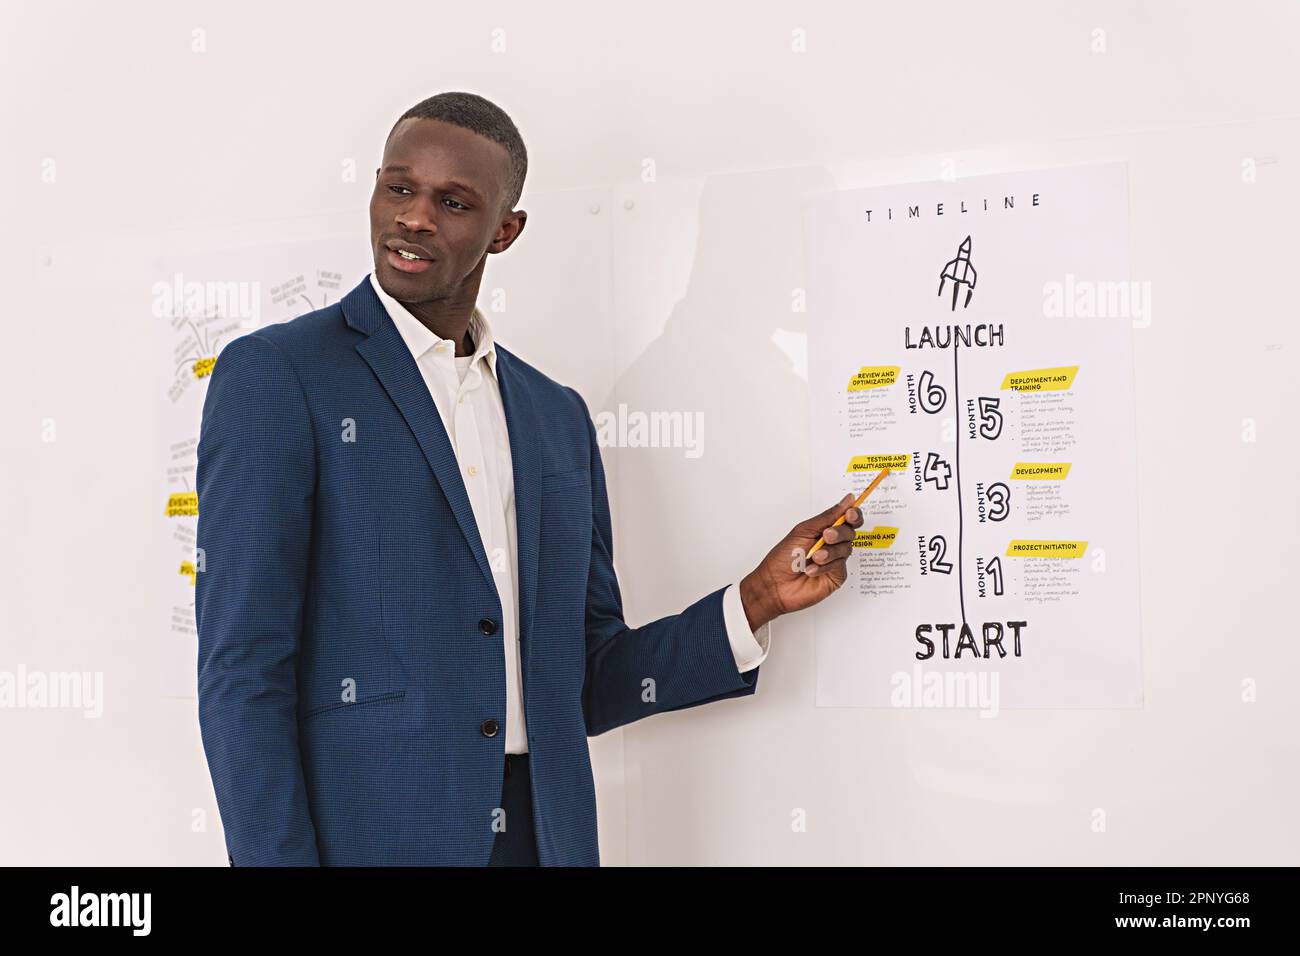 Eine farbige Person in einem Hemd ohne Krawatte stellt eine Unternehmens-Roadmap an der Wand vor, deren Blick auf die Anwesenheit aufmerksamer Kollegen hinweist. Nein Stockfoto